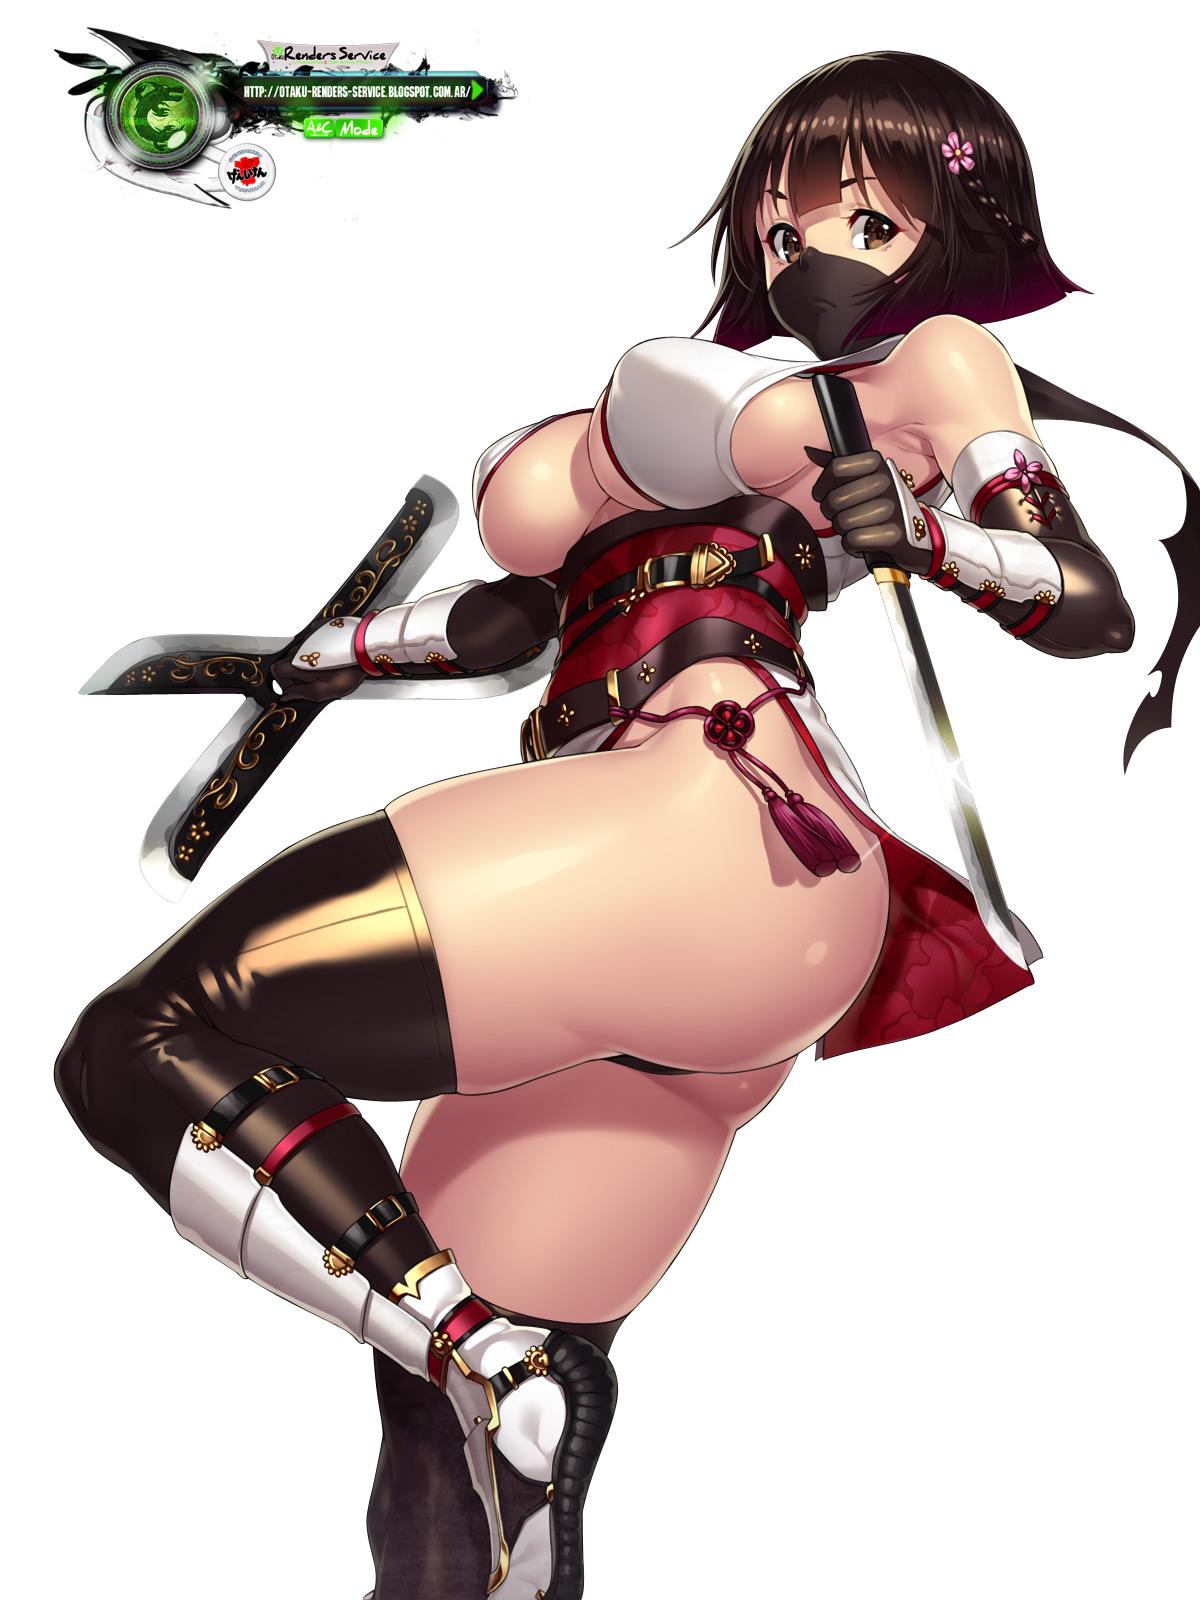 ORS Anime Renders: Houtengeki:Kakoii Ninja Warrior Girl AW Battle Render.